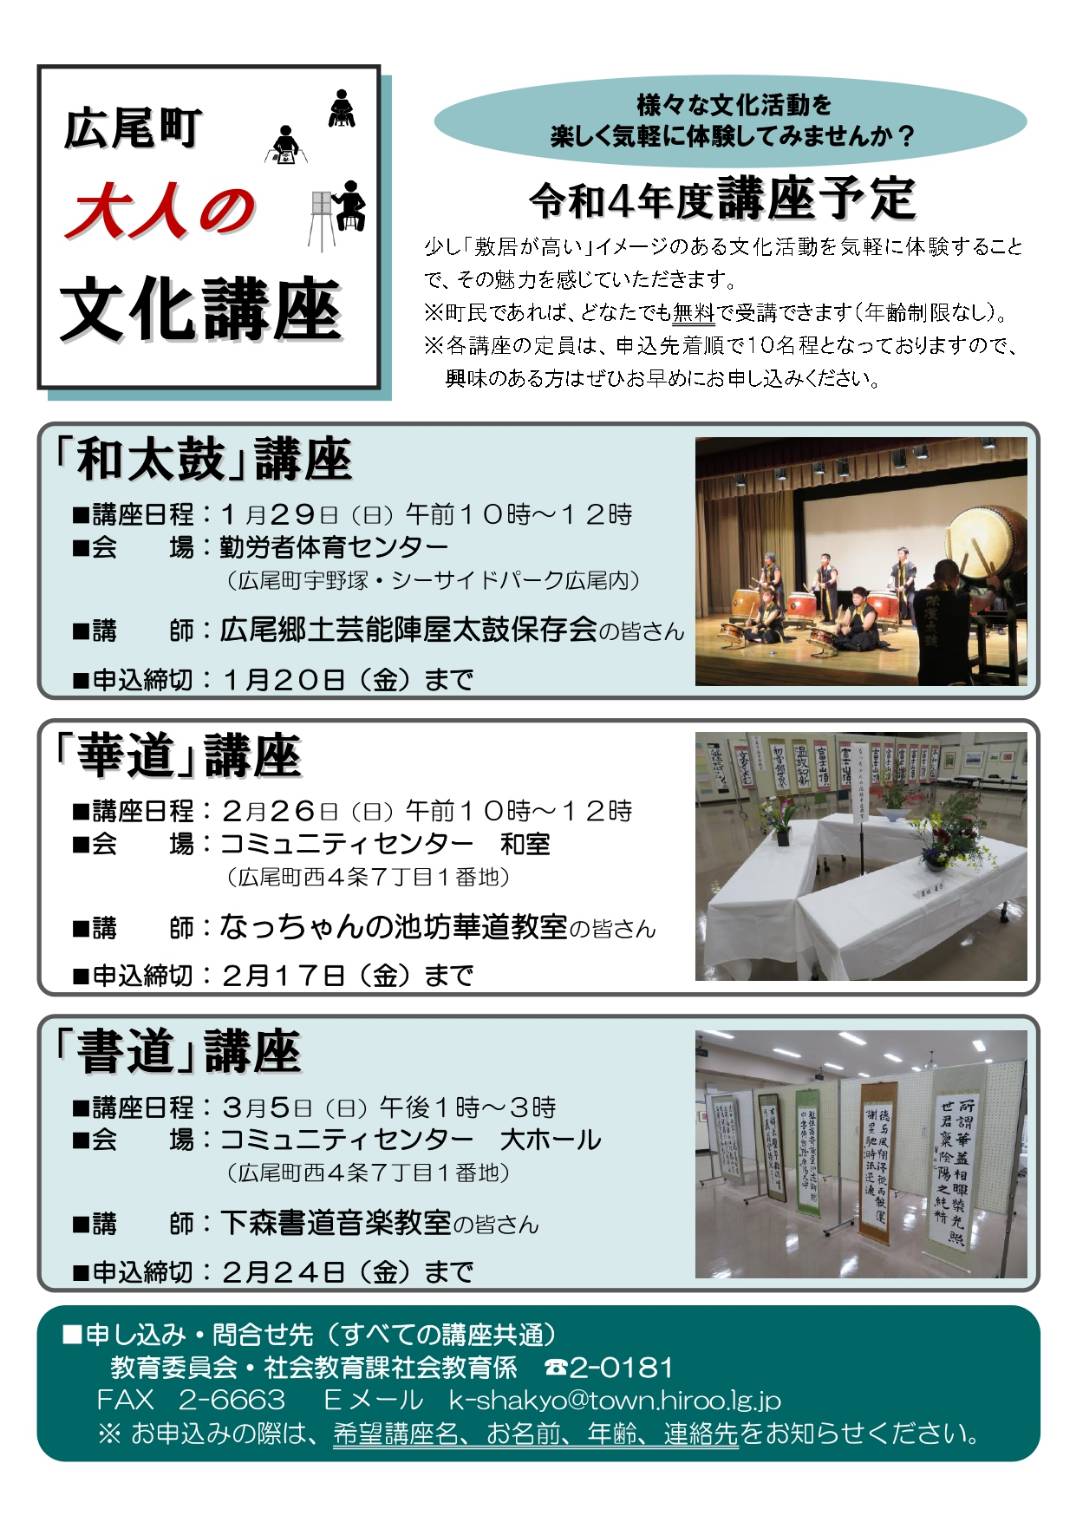 ブログ更新～広尾町大人の文化講座『華道講座』のお知らせ